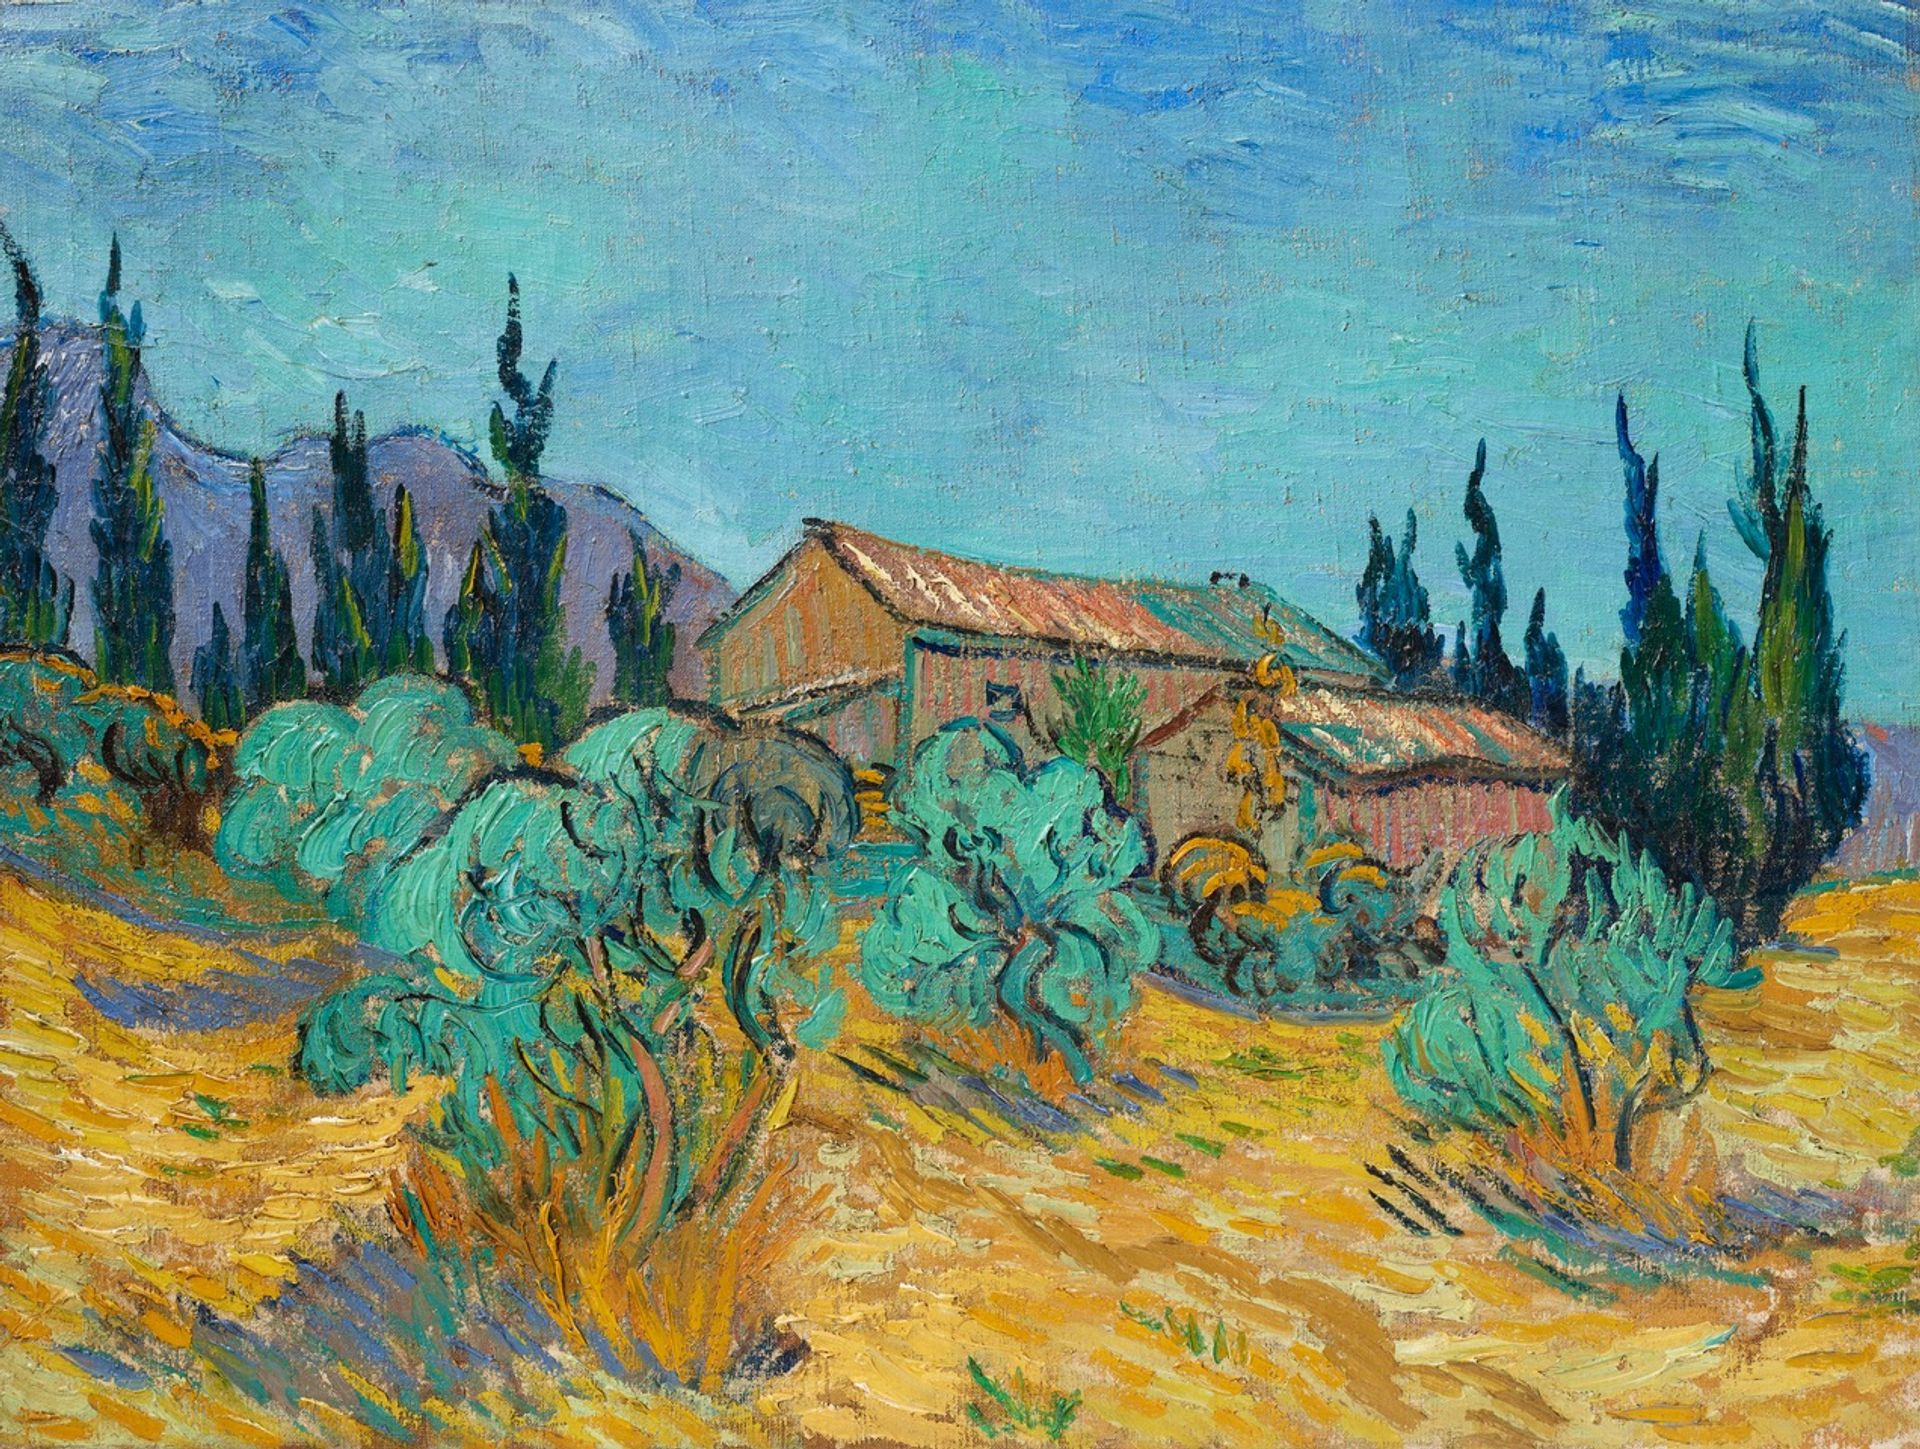 Van Gogh’s Wooden Cabins among the Olive Trees and Cypresses (Cabanes de bois parmi les oliviers et cyprès)(October 1889) © Christie’s Images Ltd 2021